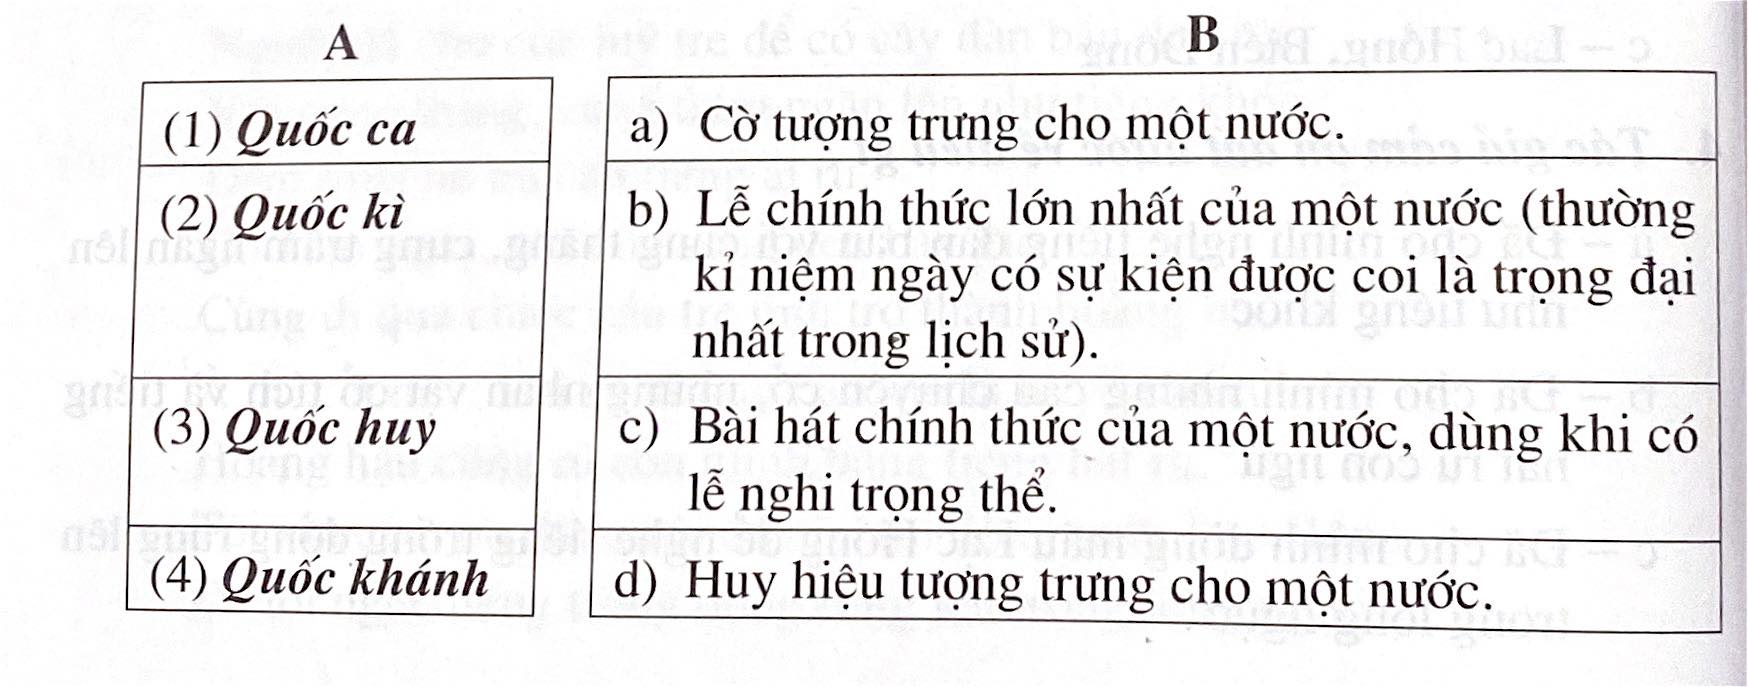 Phiếu bài tập tuần 2 tiếng Việt 5 tập một